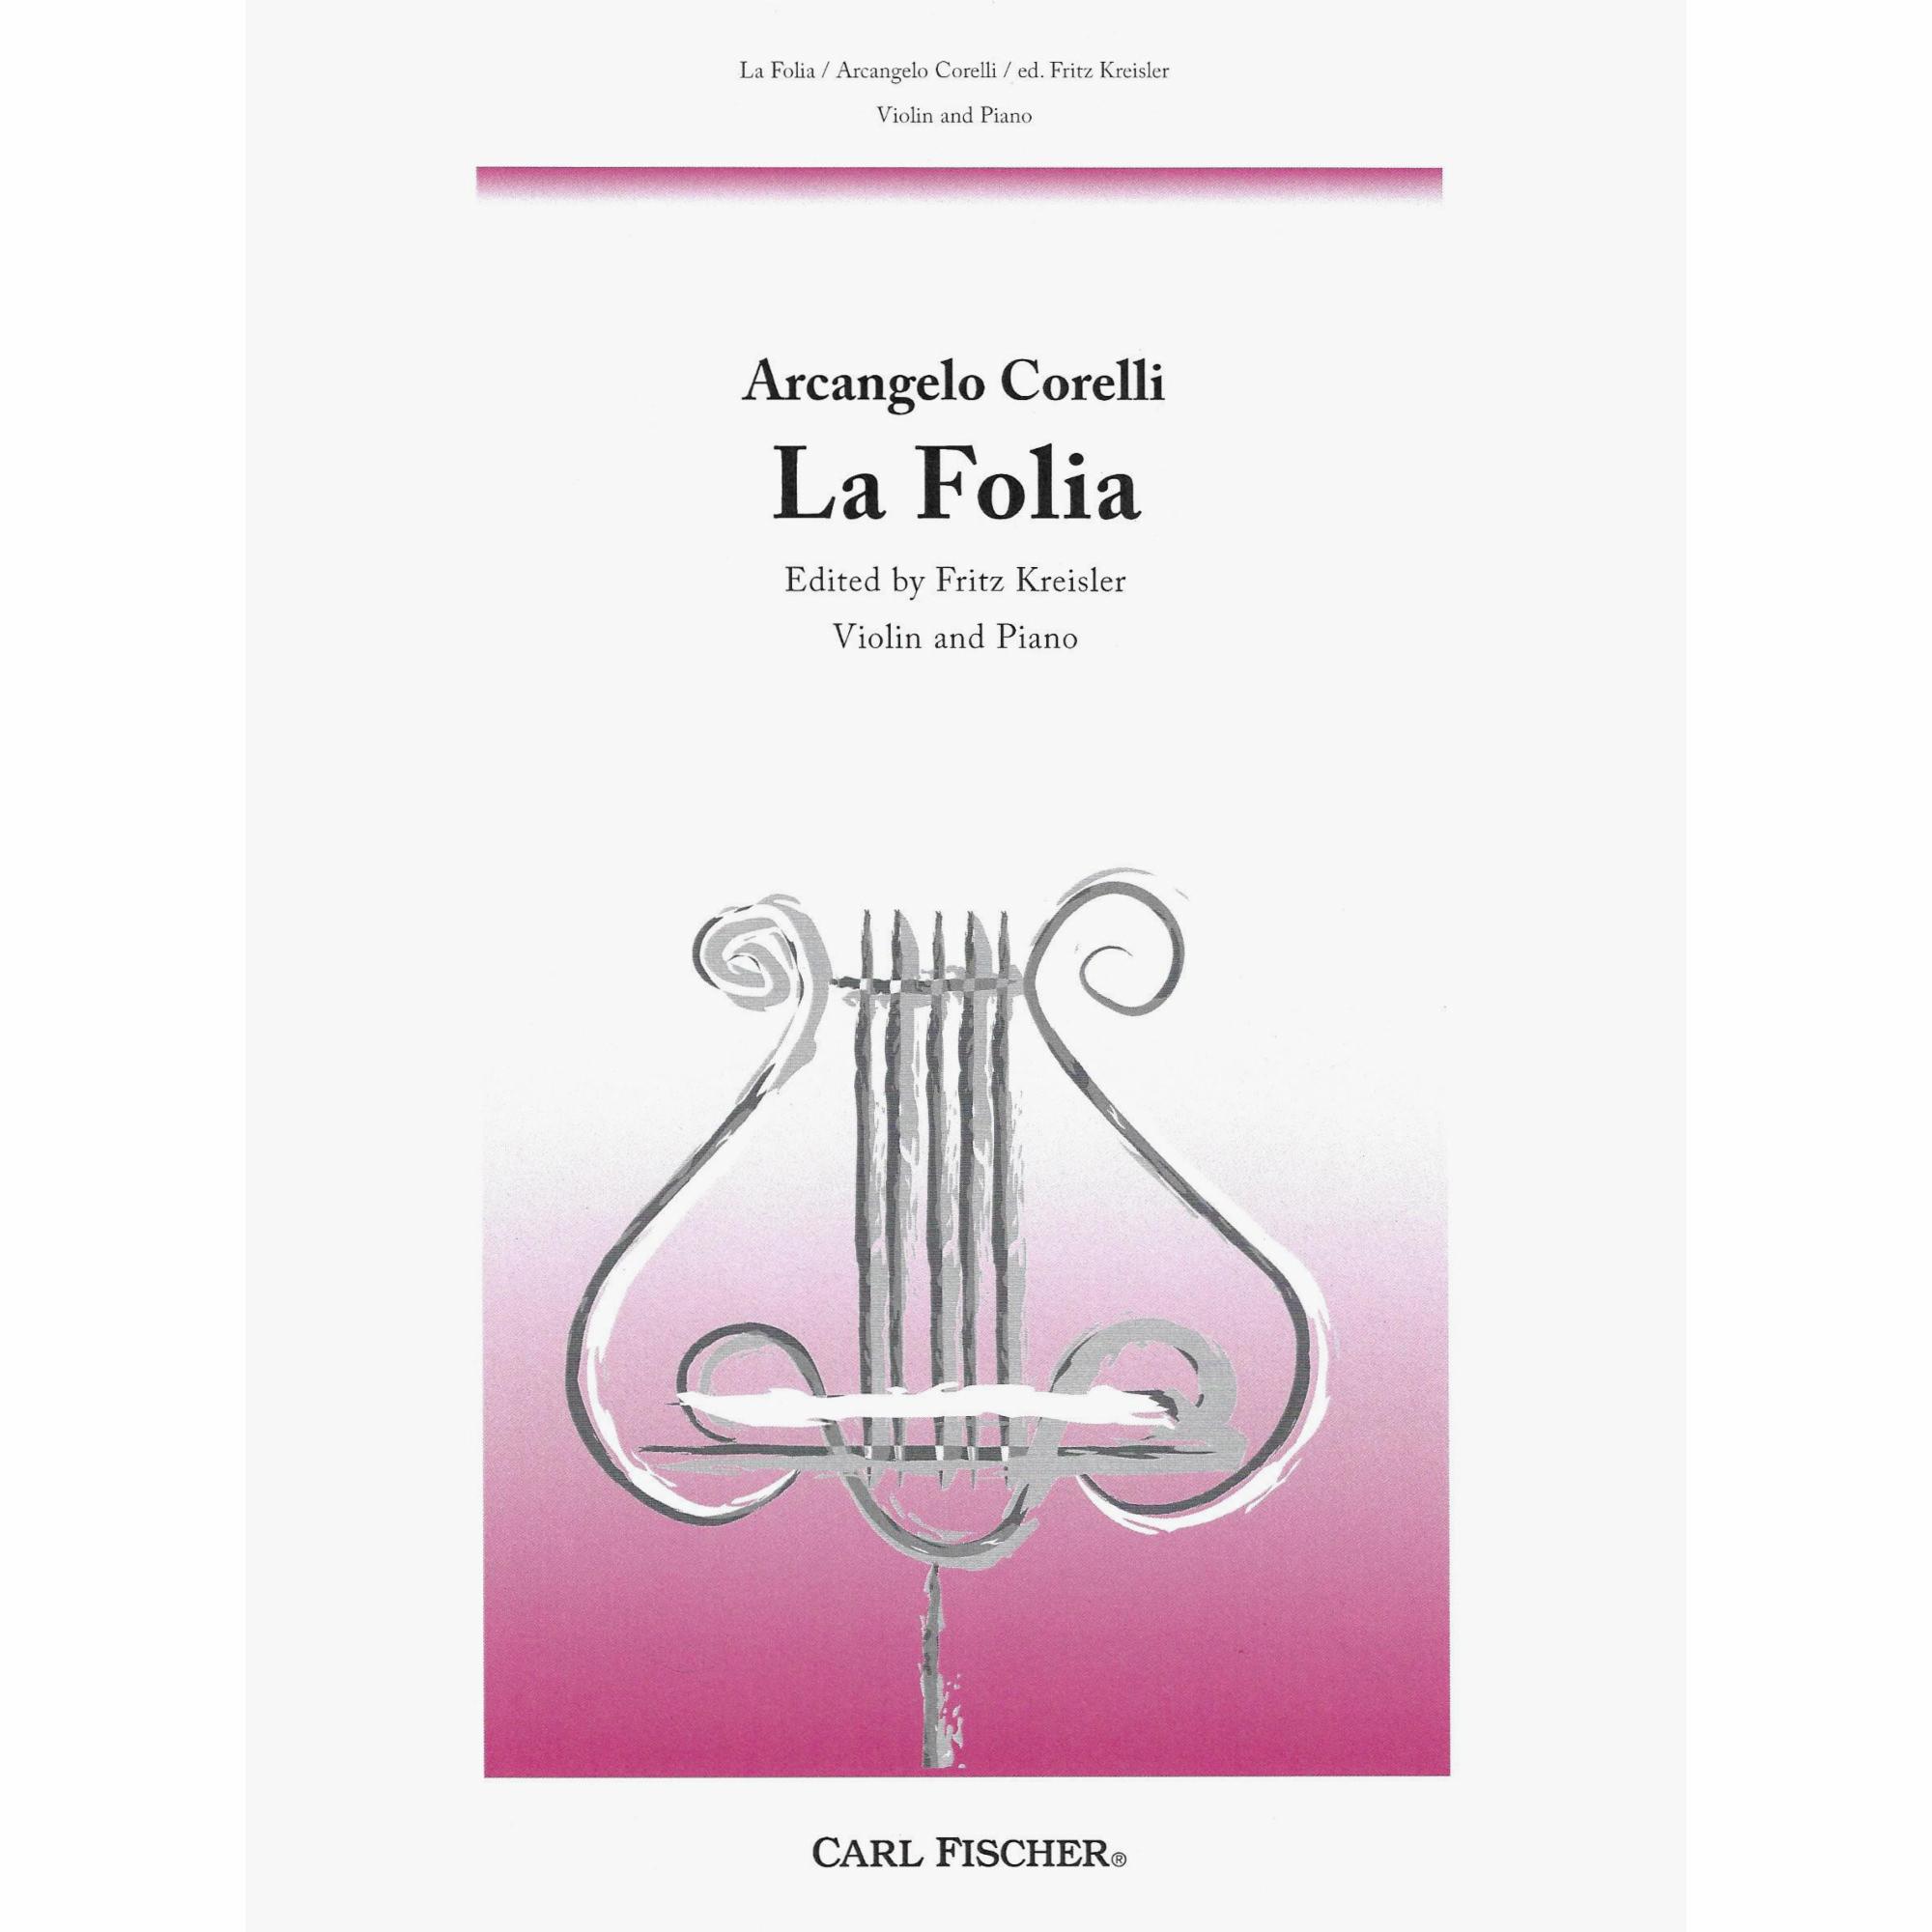 Corelli -- La Folia for Violin and Piano